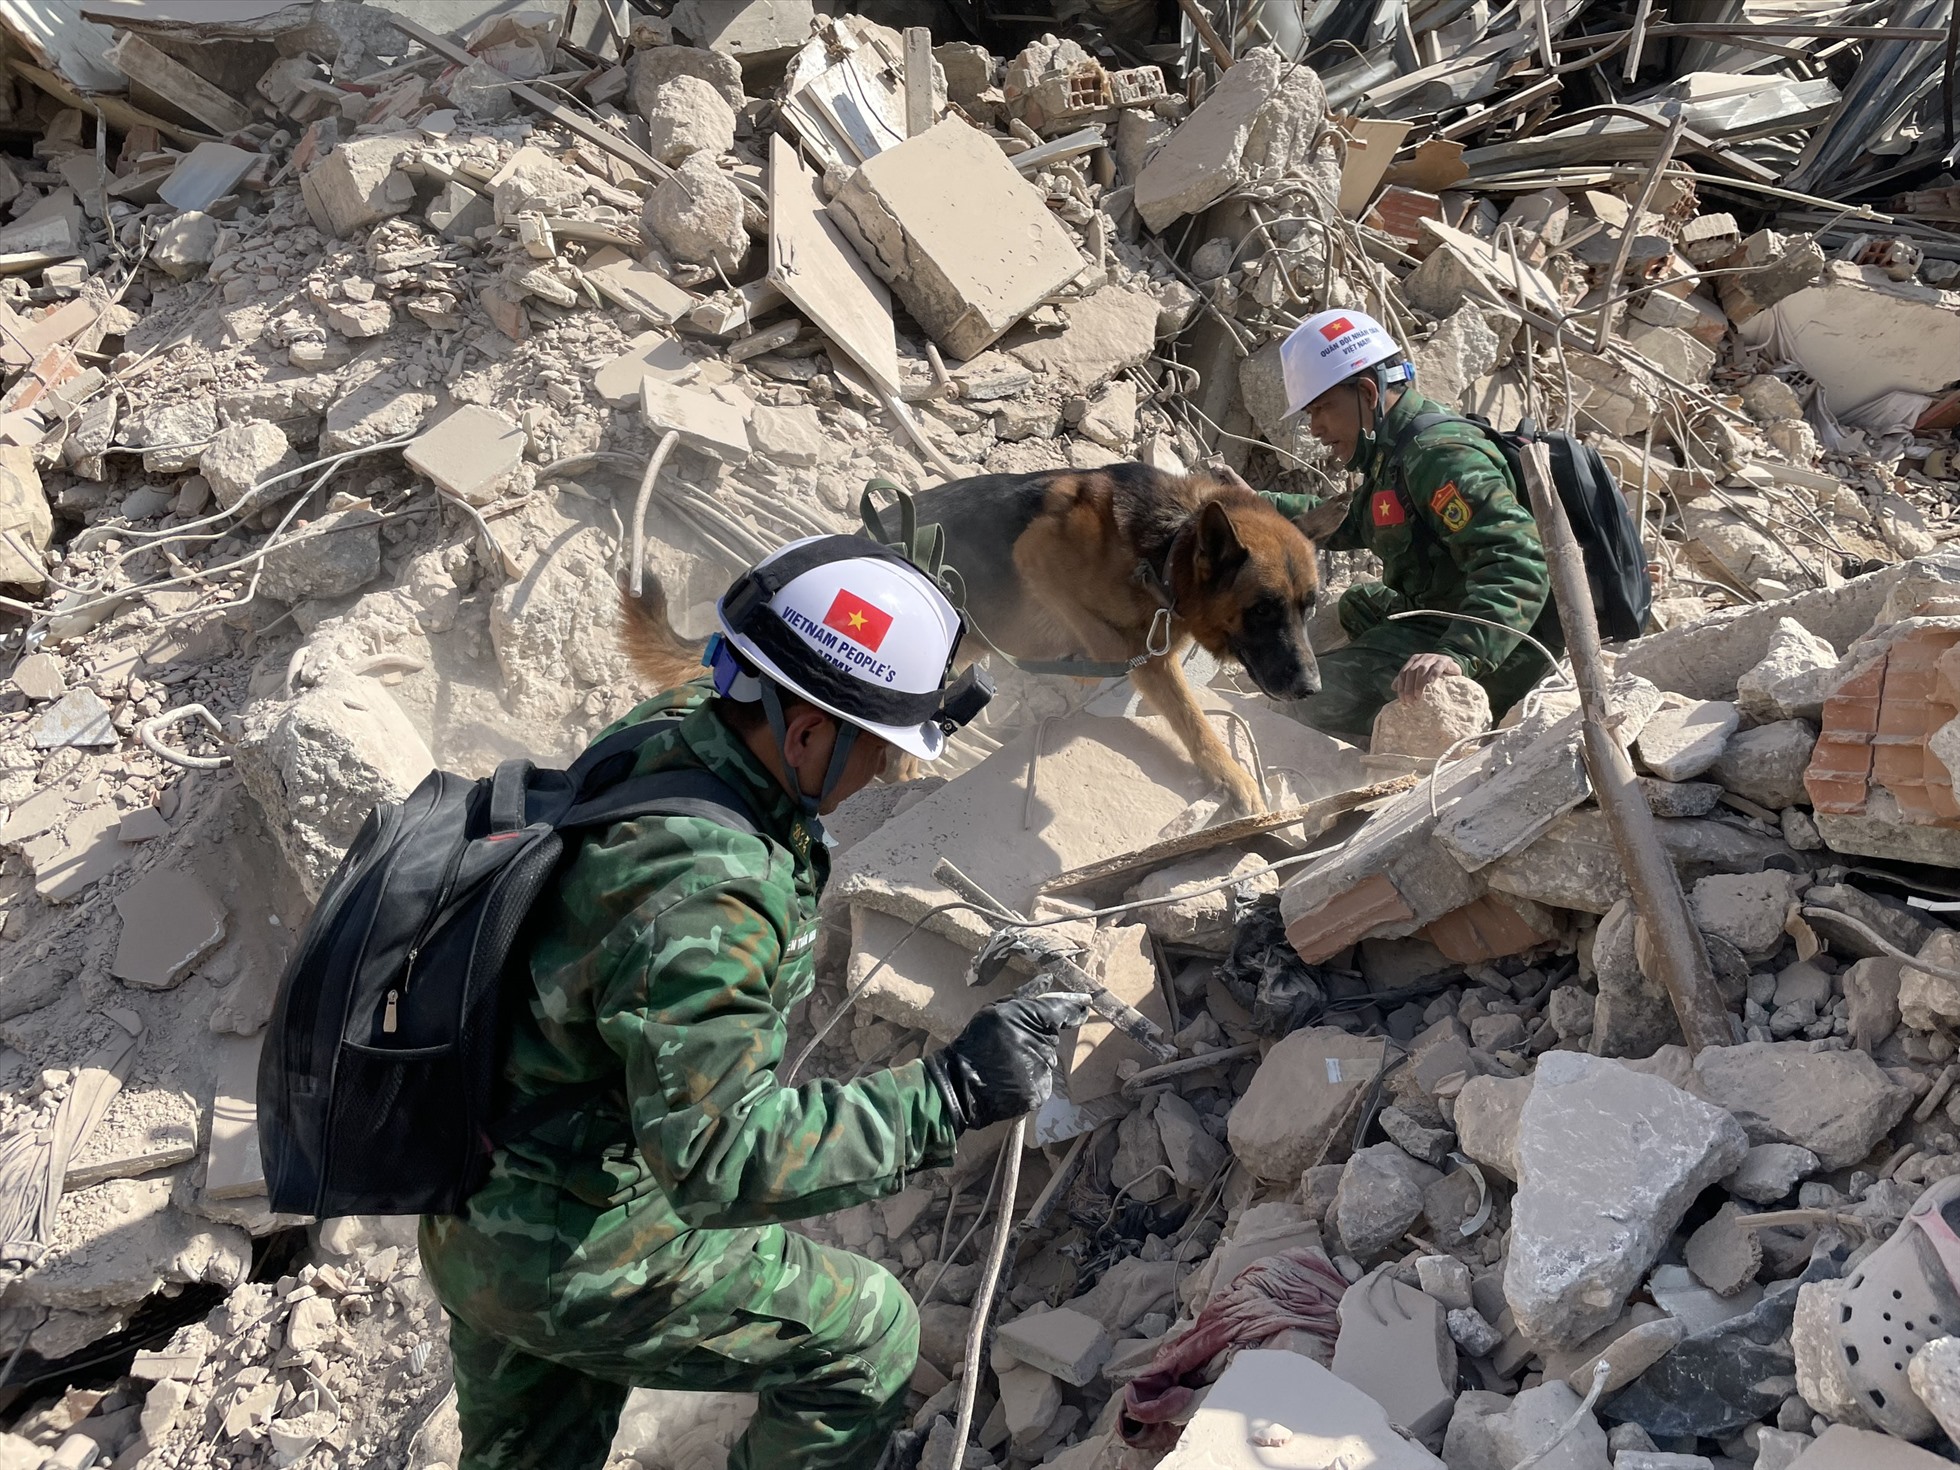 Đoàn Việt Nam đã trực tiếp hỗ trợ tìm kiếm được 12 nạn nhân bị vùi trong những đống đổ nát tại Hatay. Ảnh: Văn Hiếu